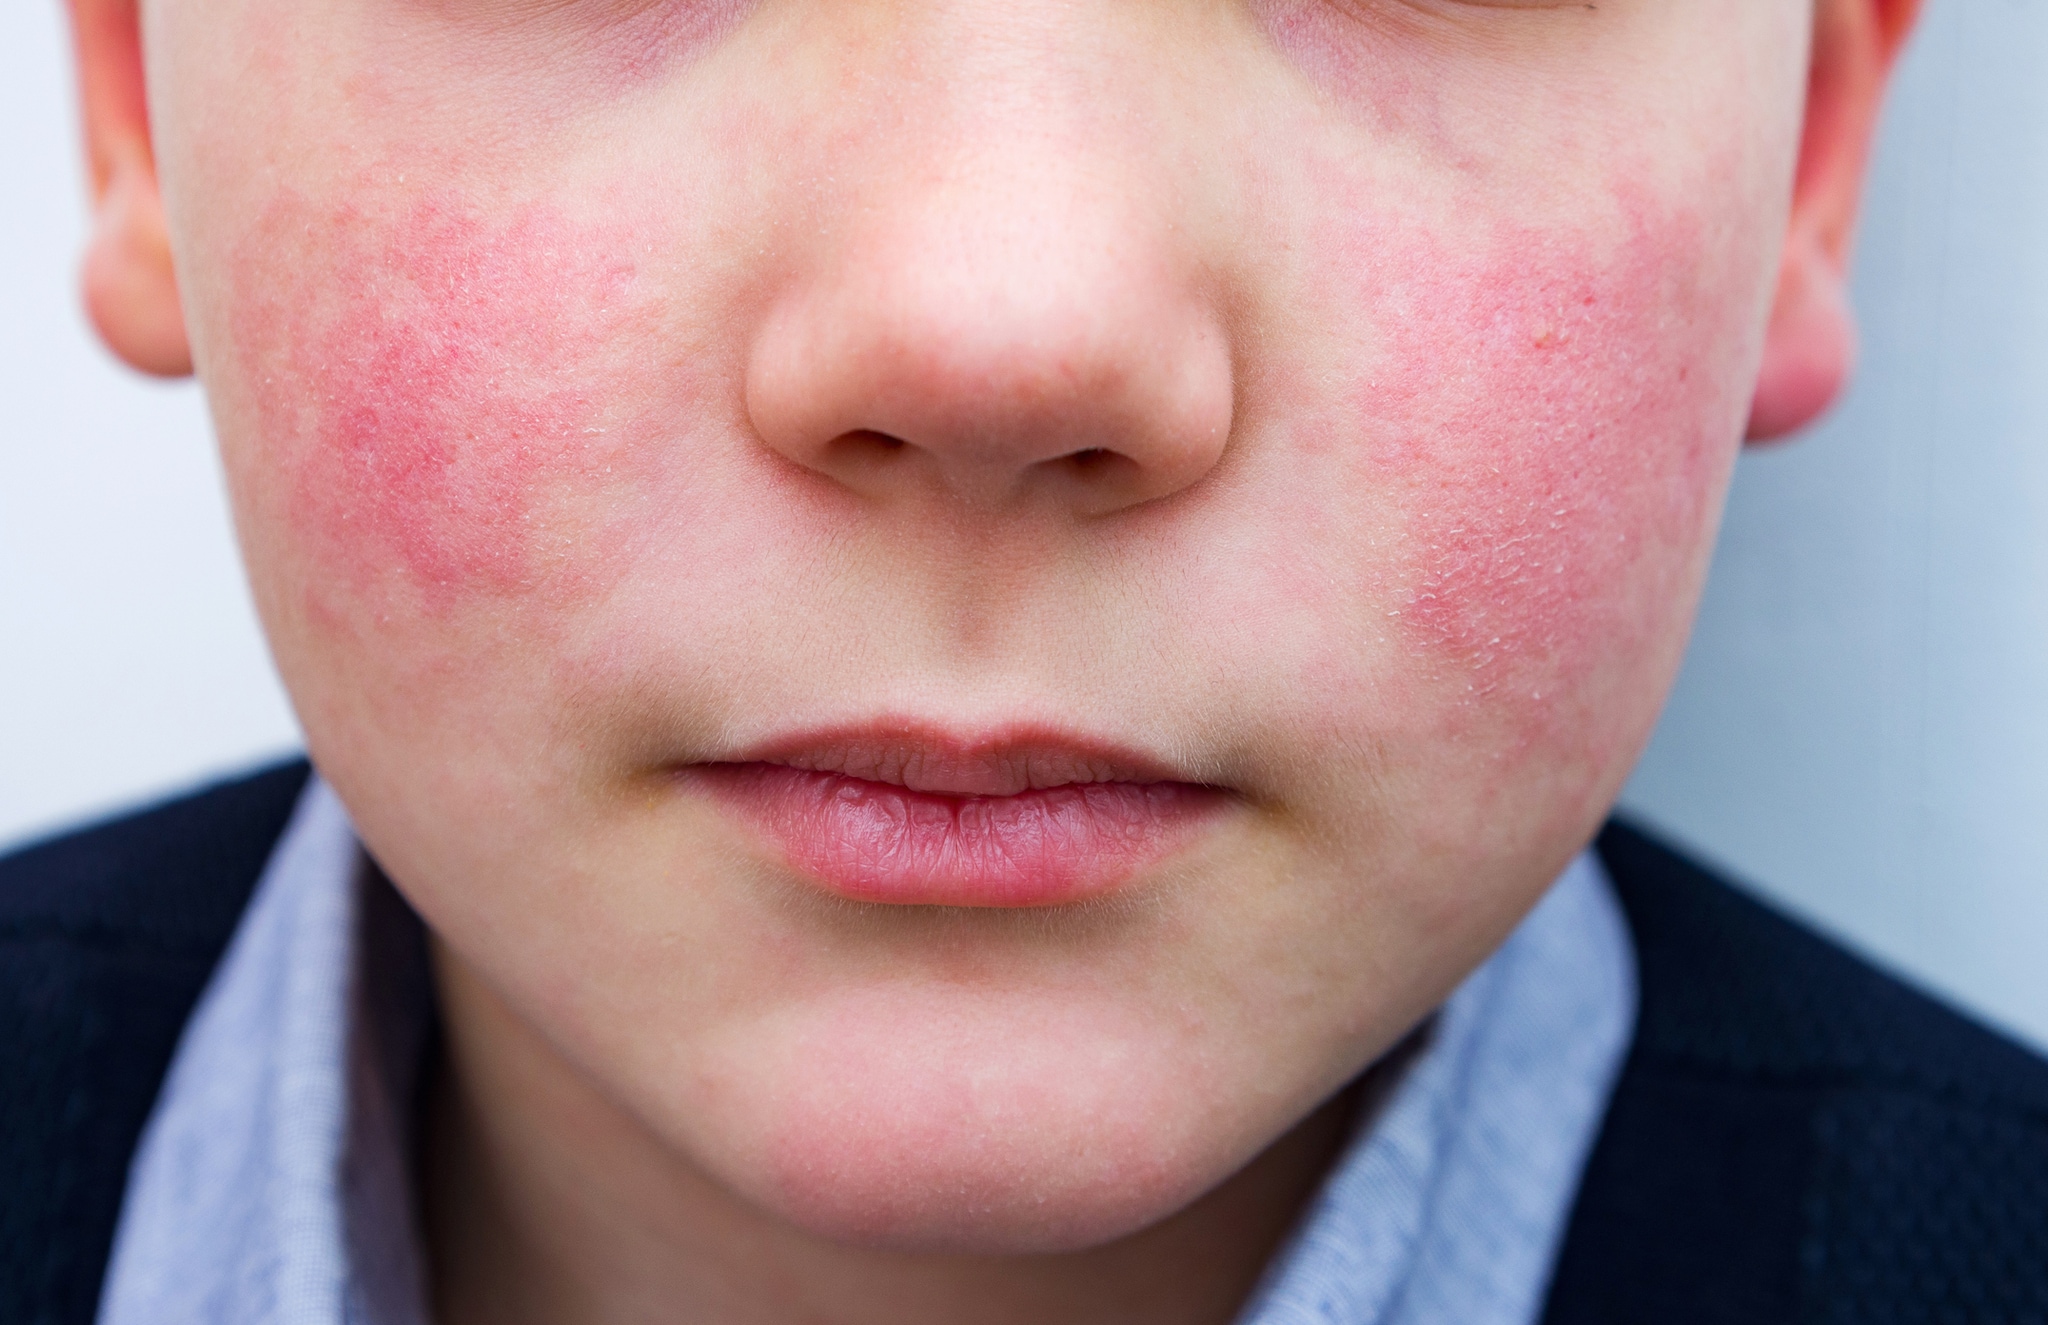 Image of parvovirus B19 "slapped cheek" rash